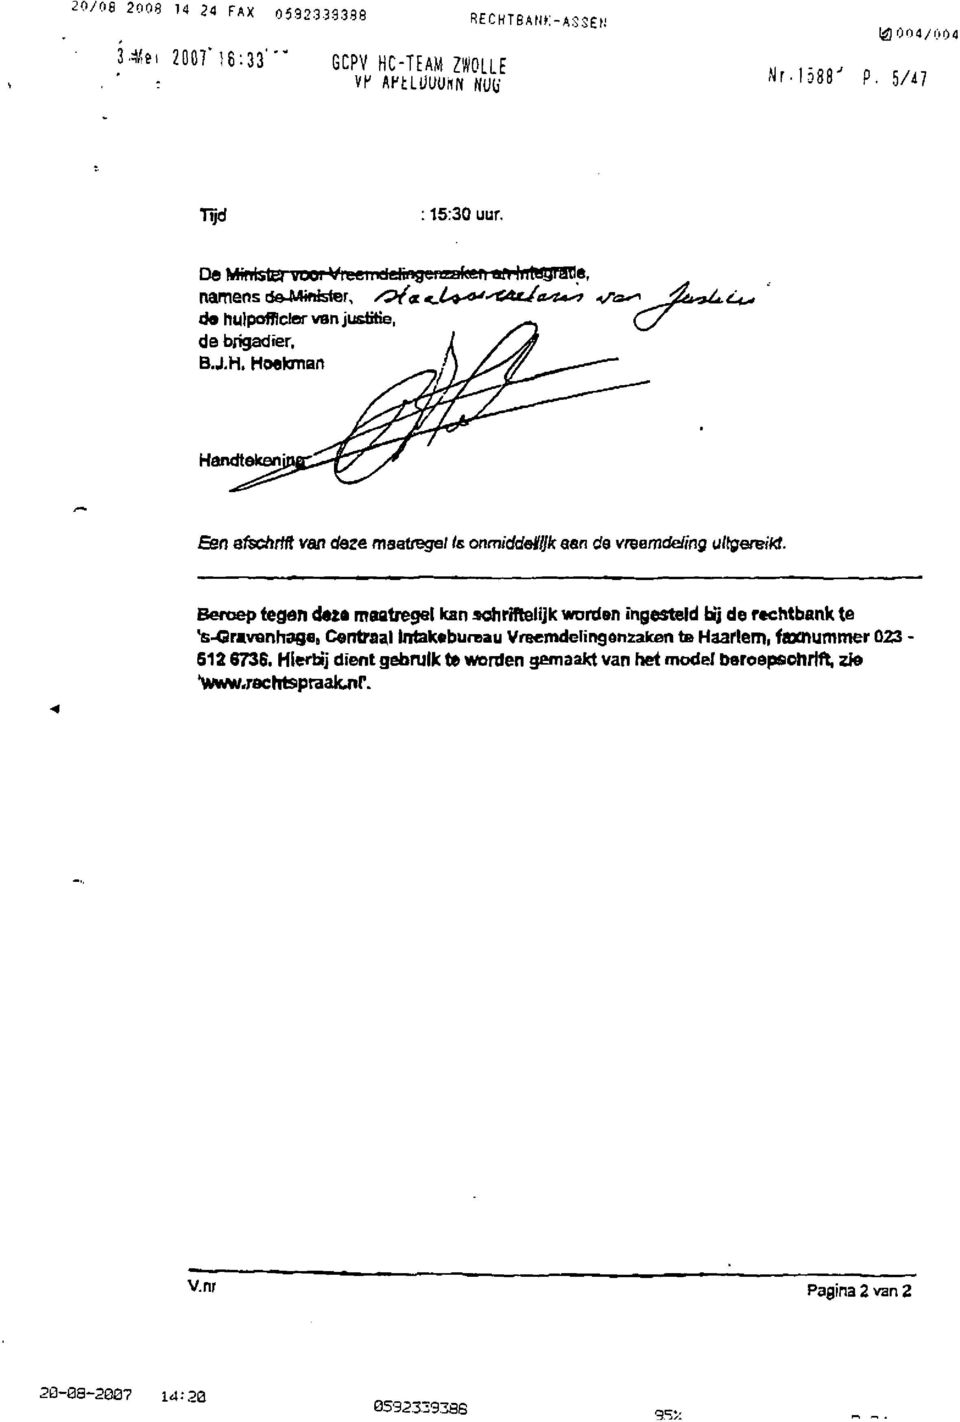 Beroep tegen deze maatregel kan schriftelijk worden ingesteld bij de rechtbank te 's-gravenhage, Centraal Intakebureau Vreemdelingenzaken te Haarlem, faxnummer 023 S12 6736.